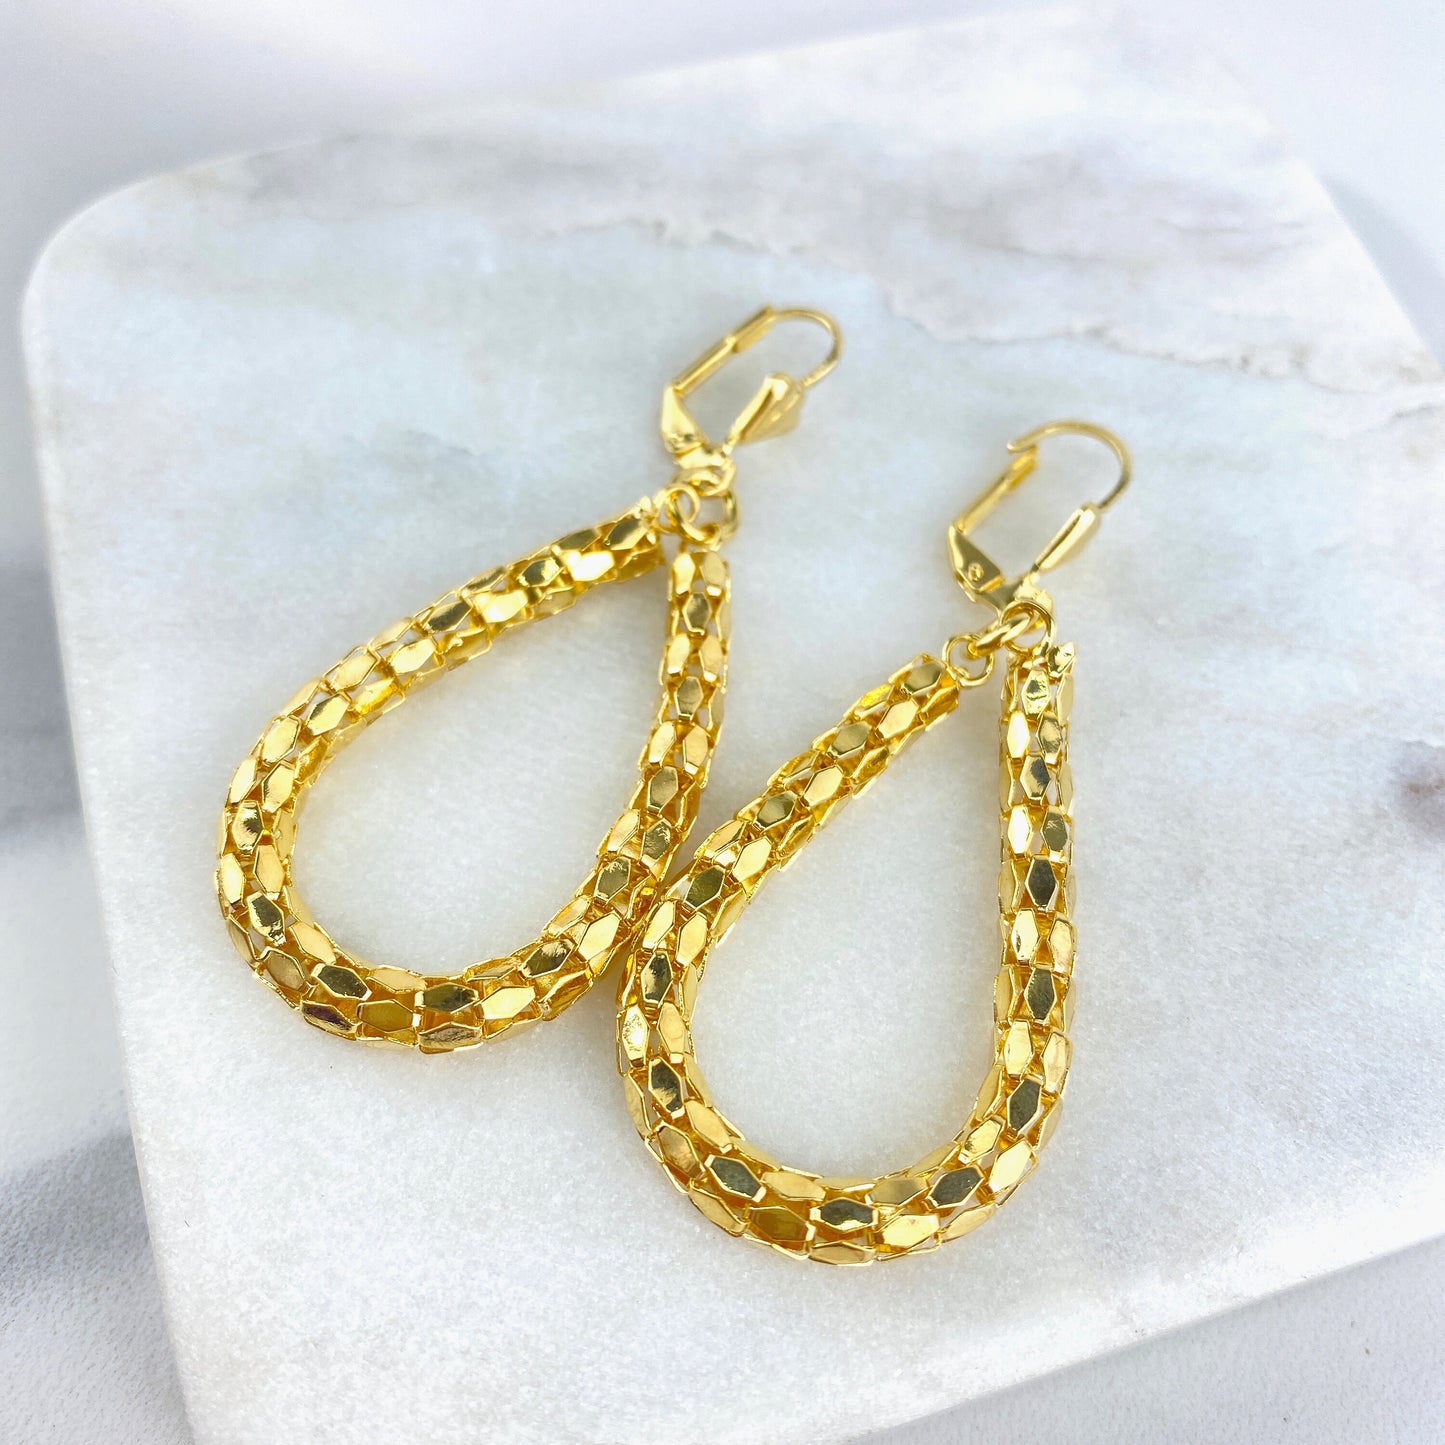 18k Gold Filled 4.4mm Popcorn Chain Oval Tear Shape Dangle Earrings Wholesale Jewelry Making Supplies